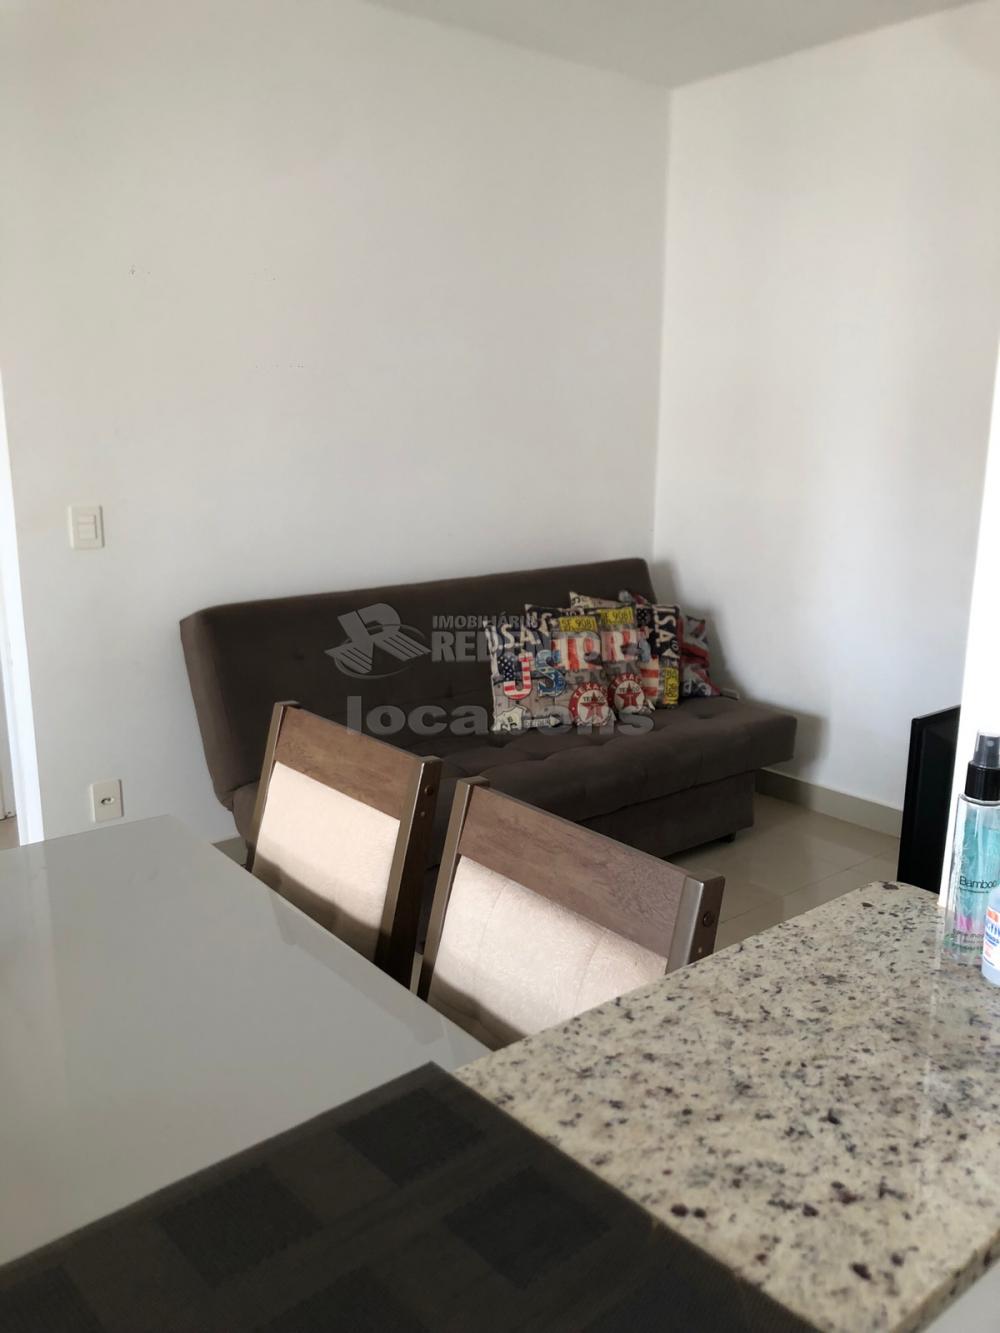 Alugar Apartamento / Padrão em São José do Rio Preto apenas R$ 2.200,00 - Foto 9